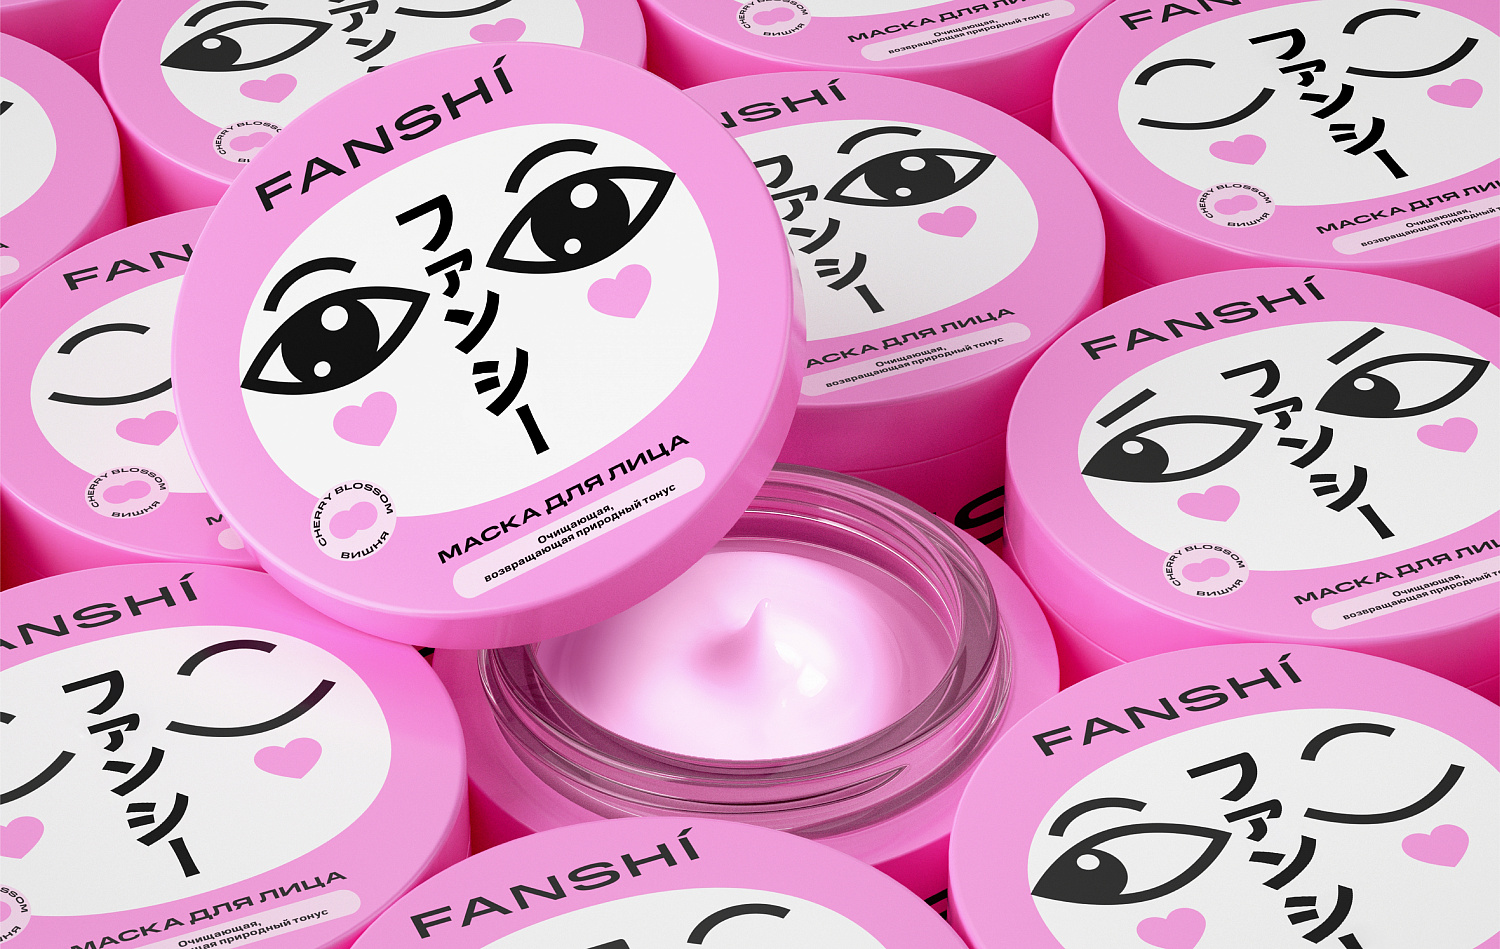 FANSHI: Нейминг и визуальный стиль для косметической СТМ Spar - Портфолио Depot